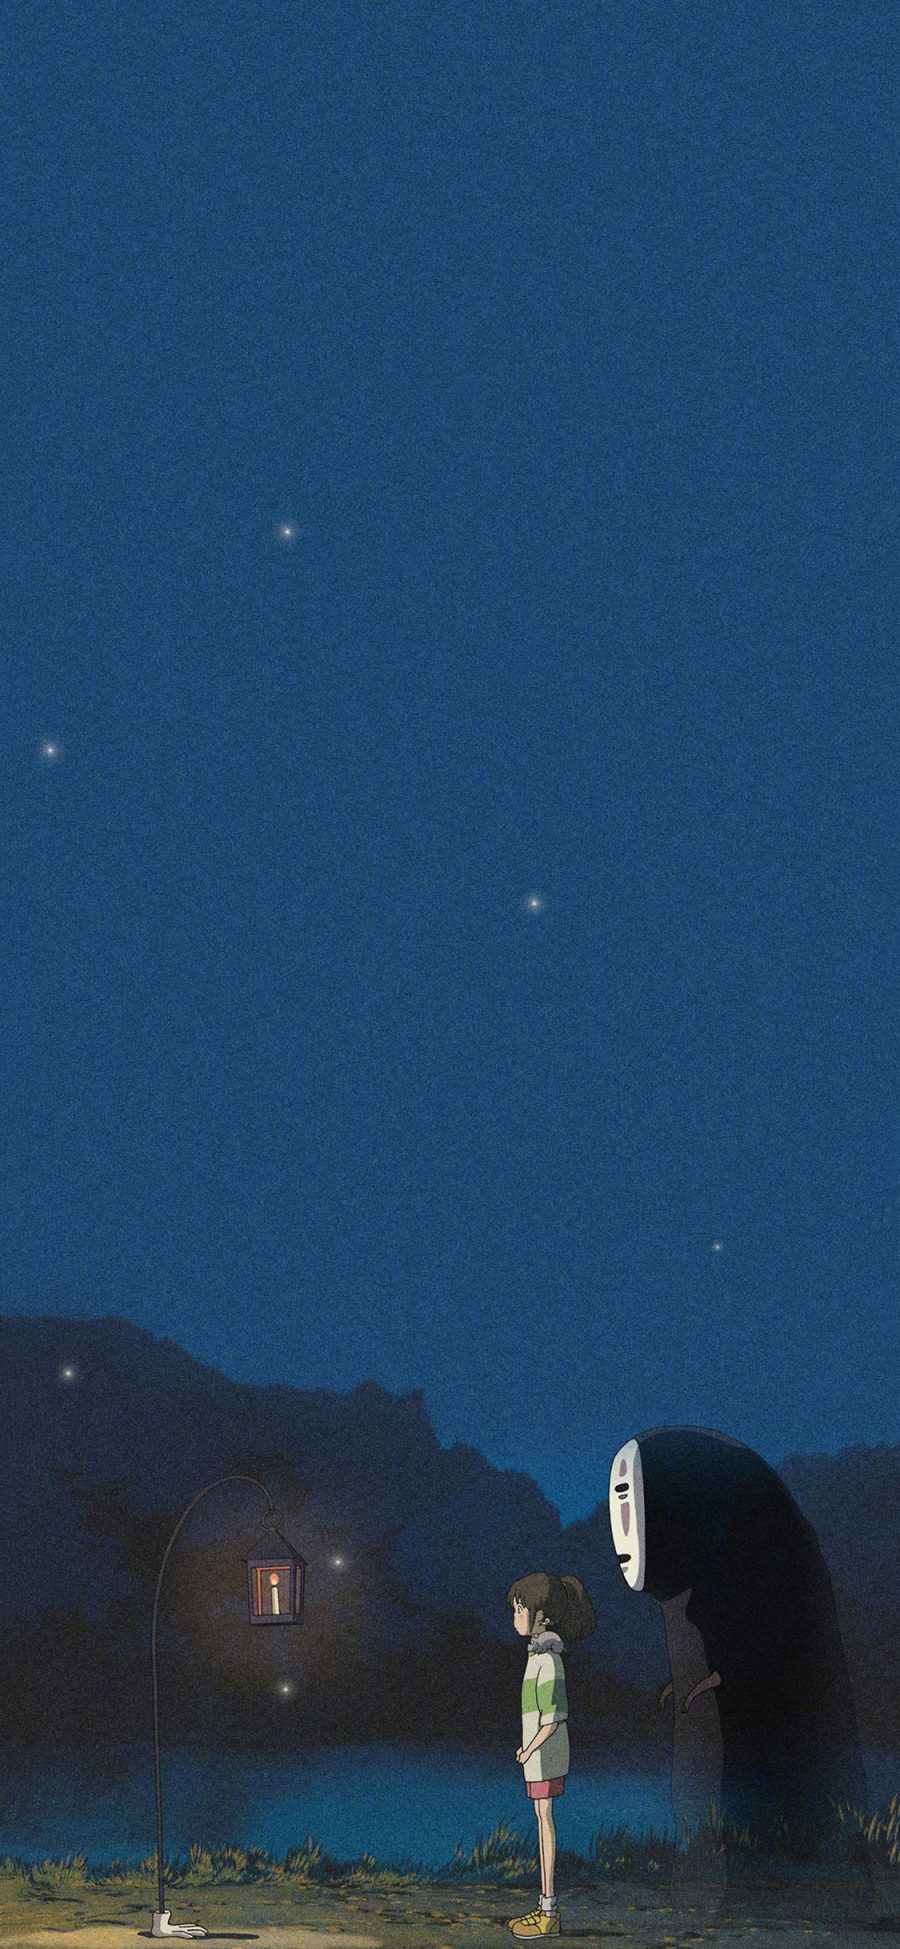 [2436×1125]千与千寻 宫崎骏 无脸男 夜晚 苹果手机动漫壁纸图片